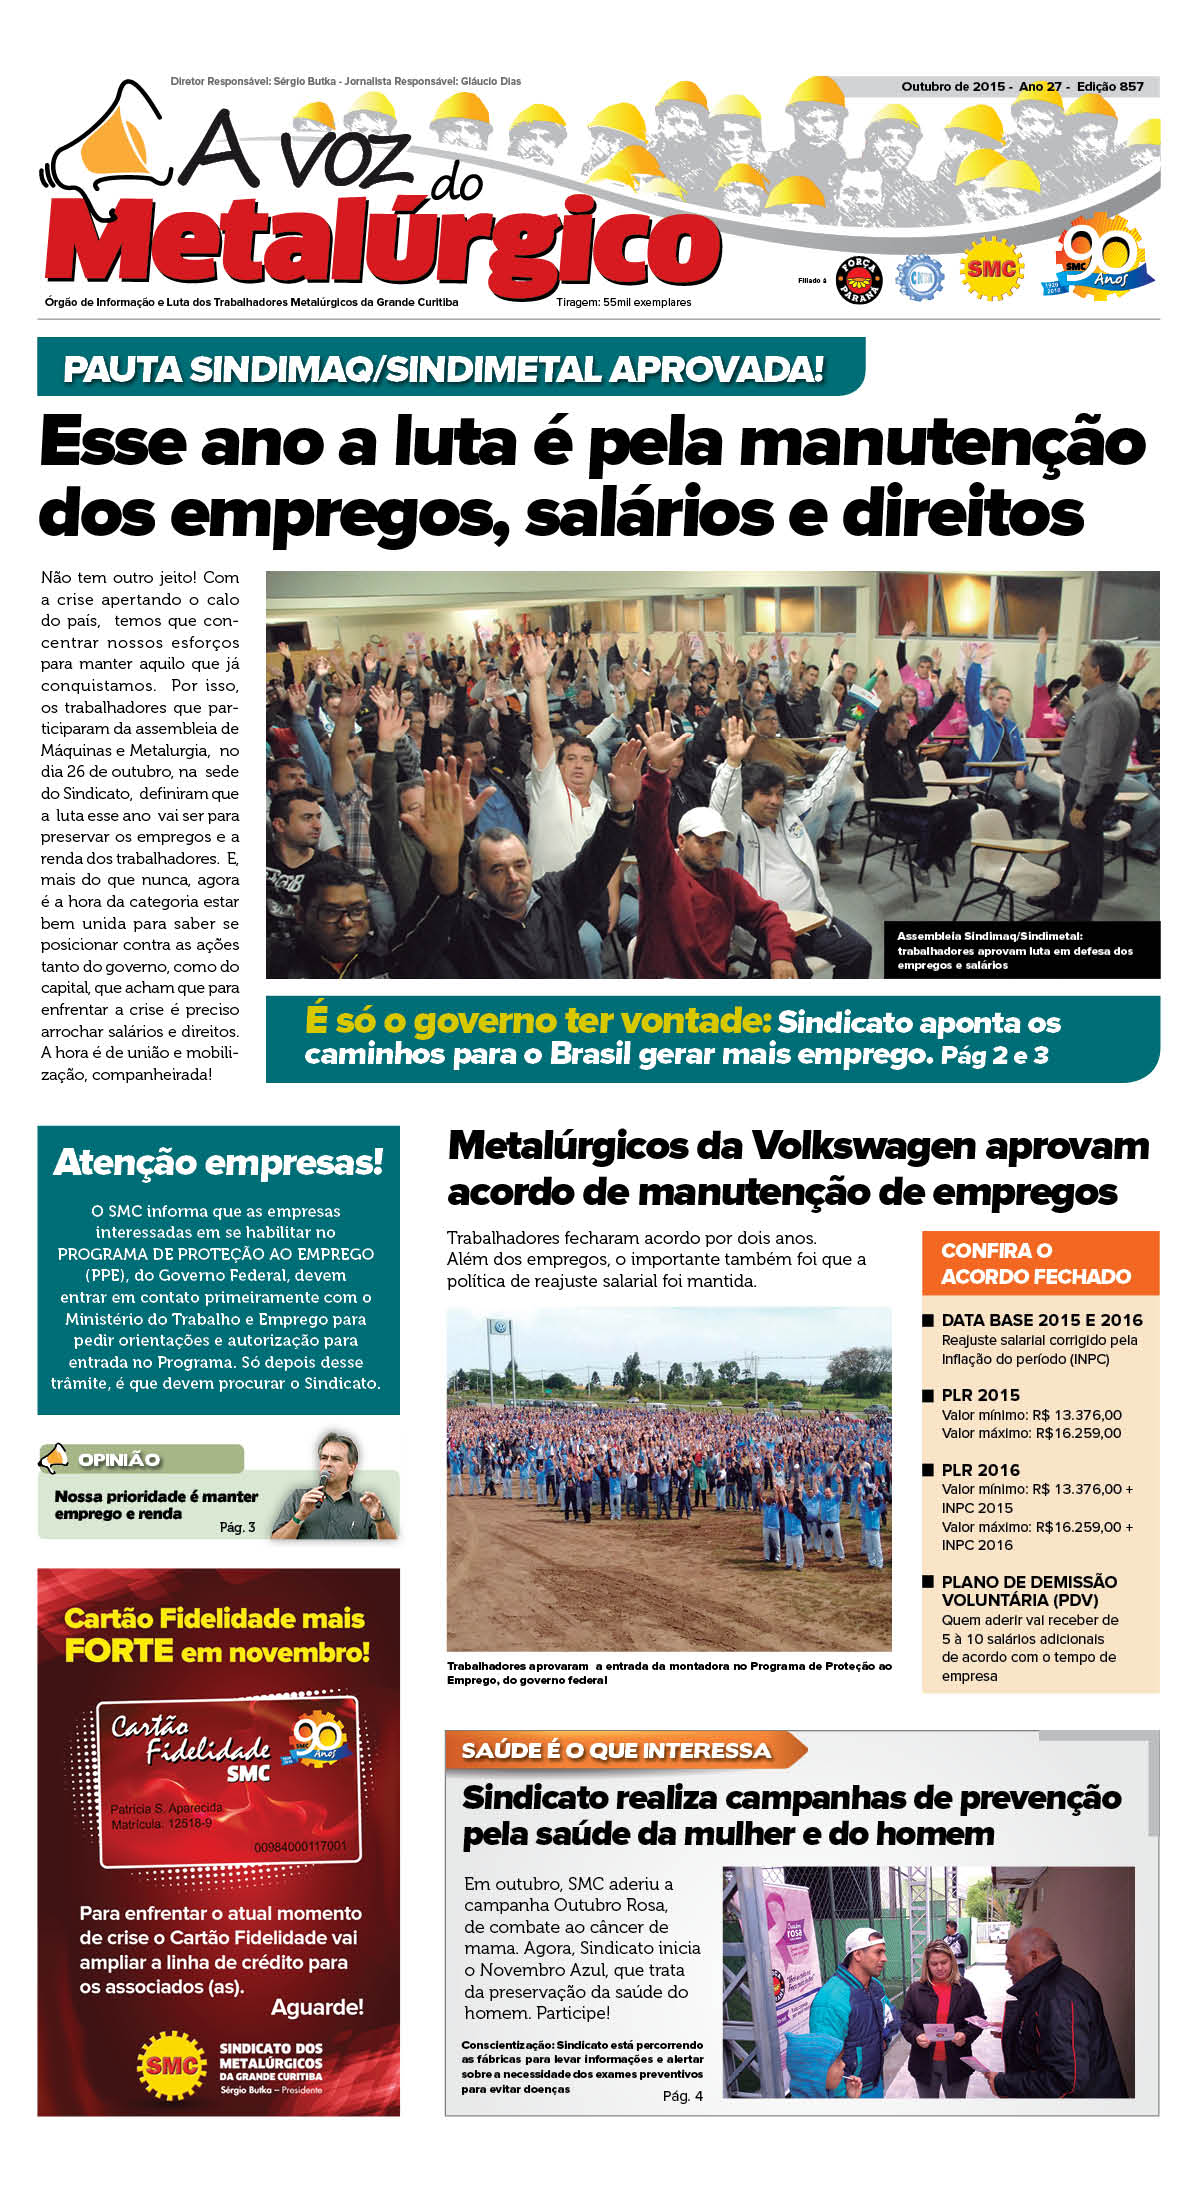 Confira a nova edição do jornal dos Metalúrgicos da Grande Curitiba